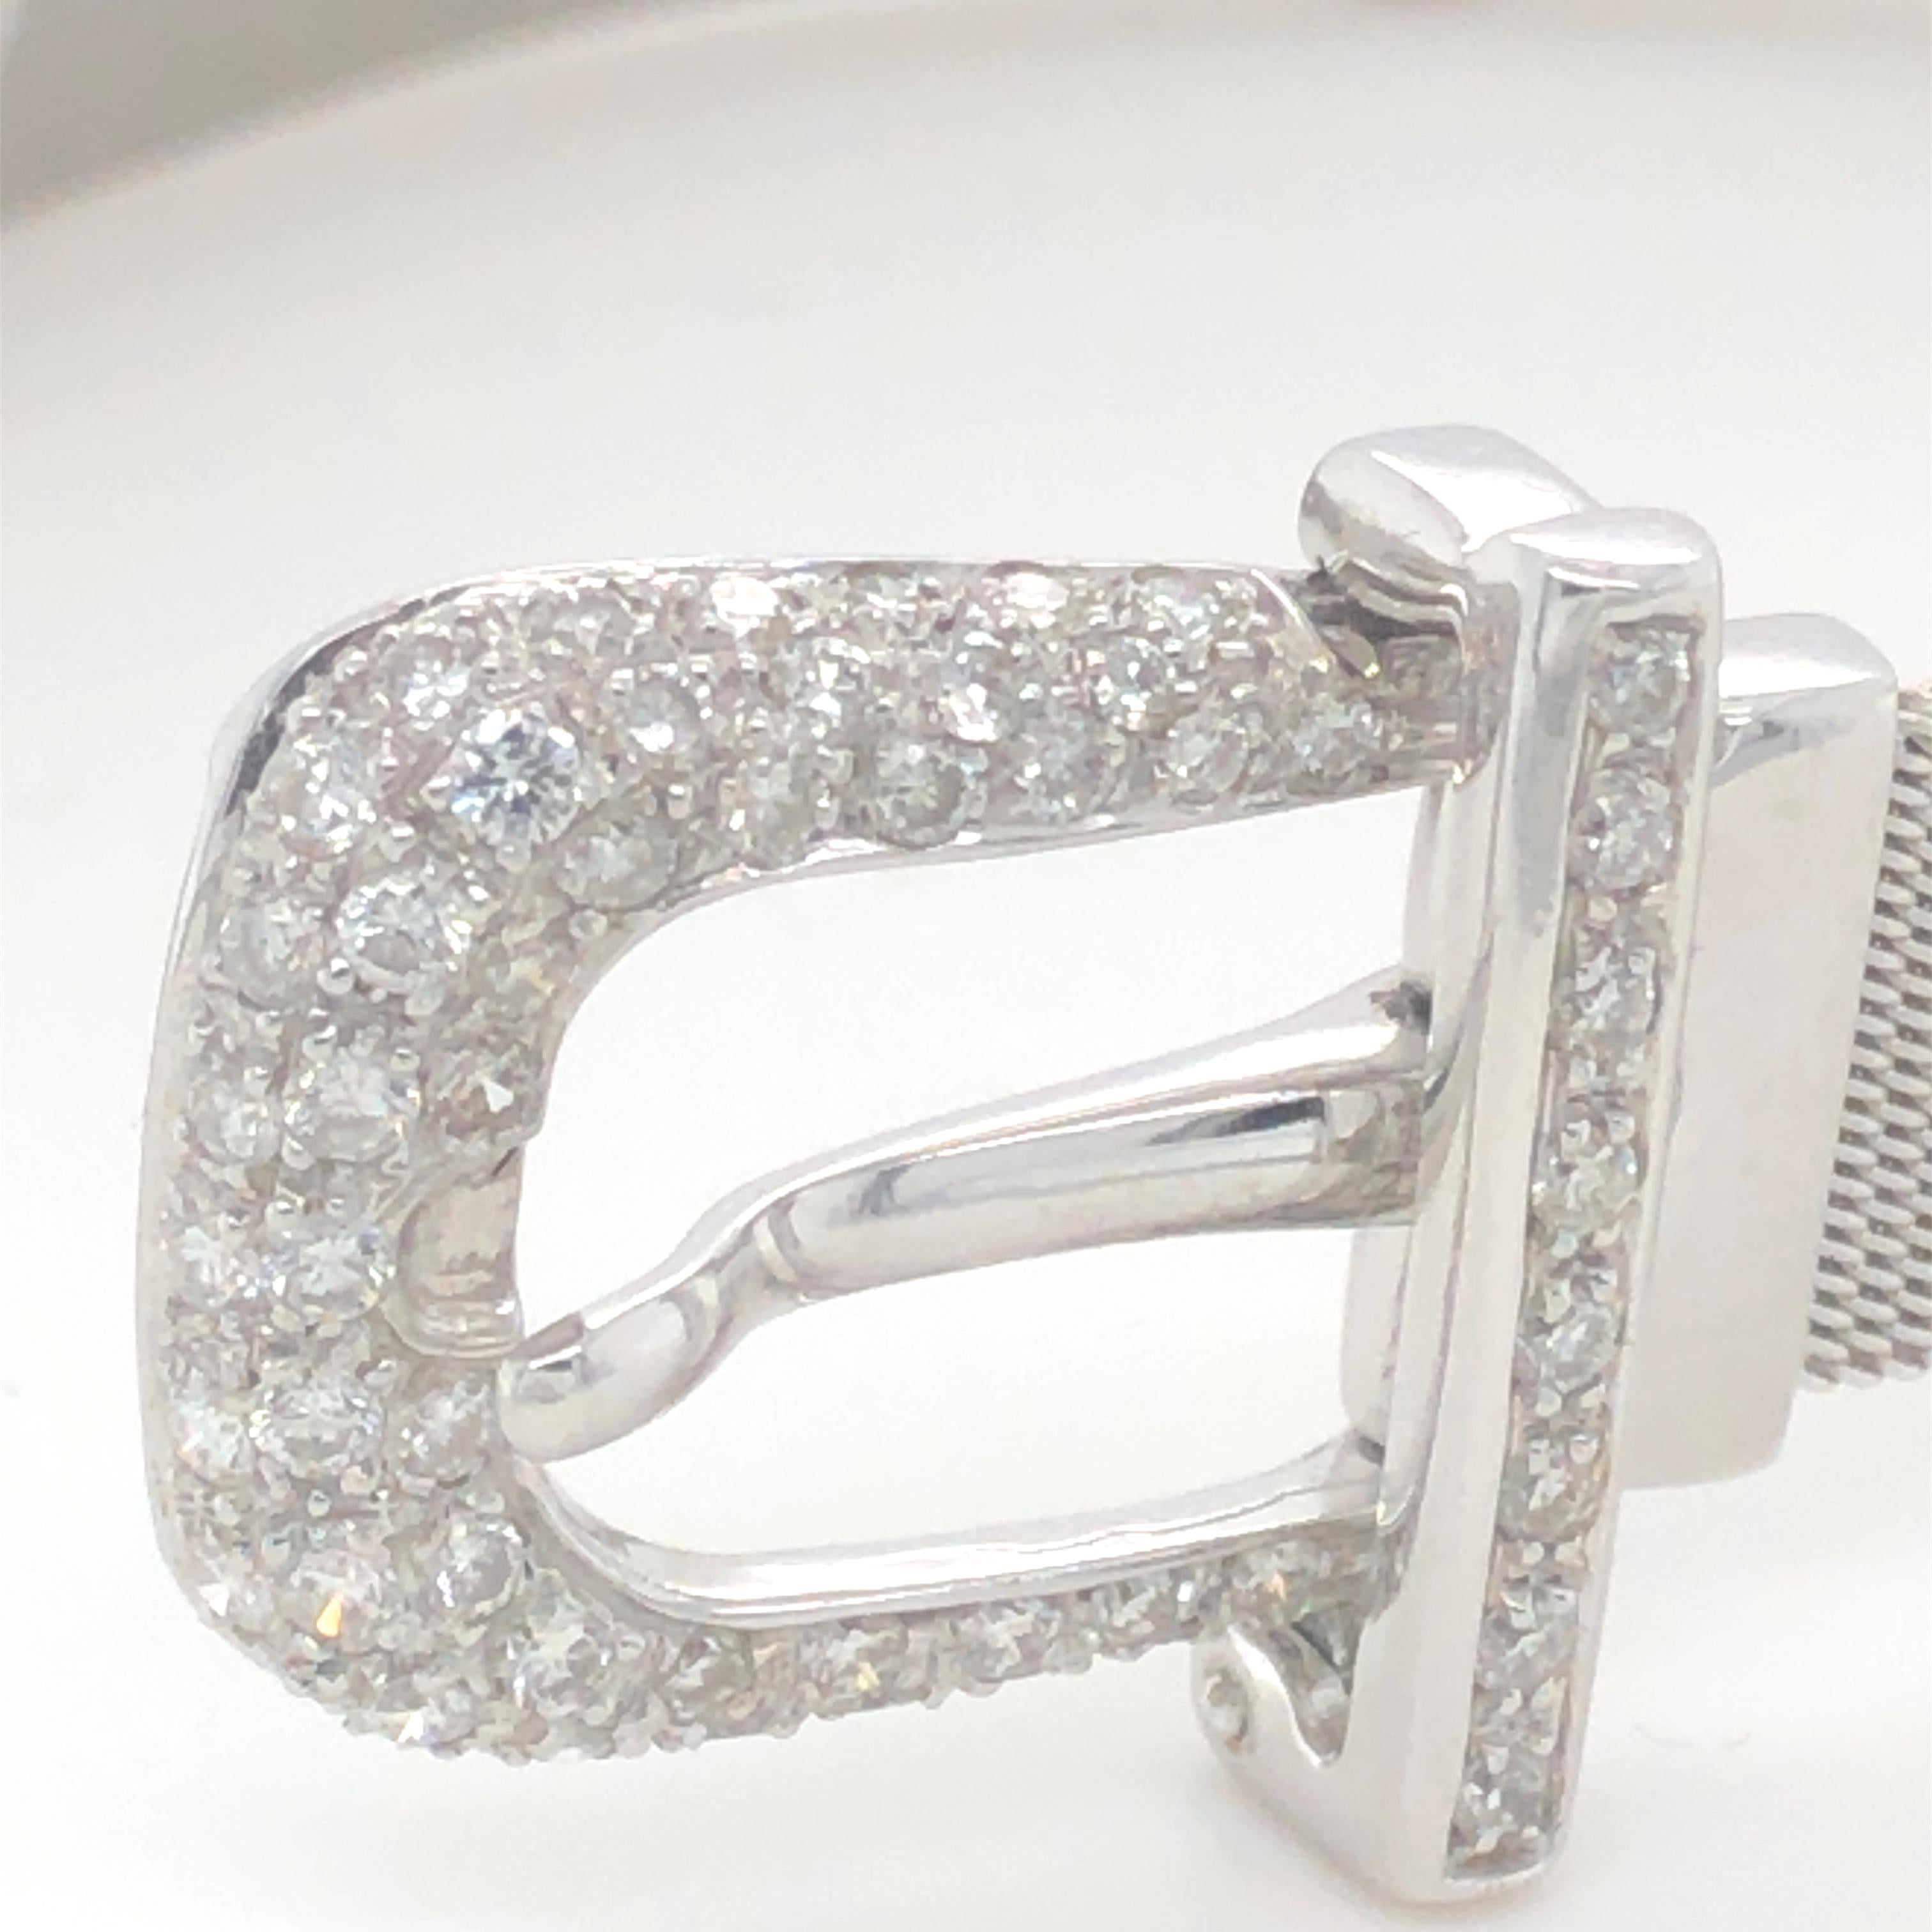 Bespoke Diamond Handmadeset Buckle Bracelet 1